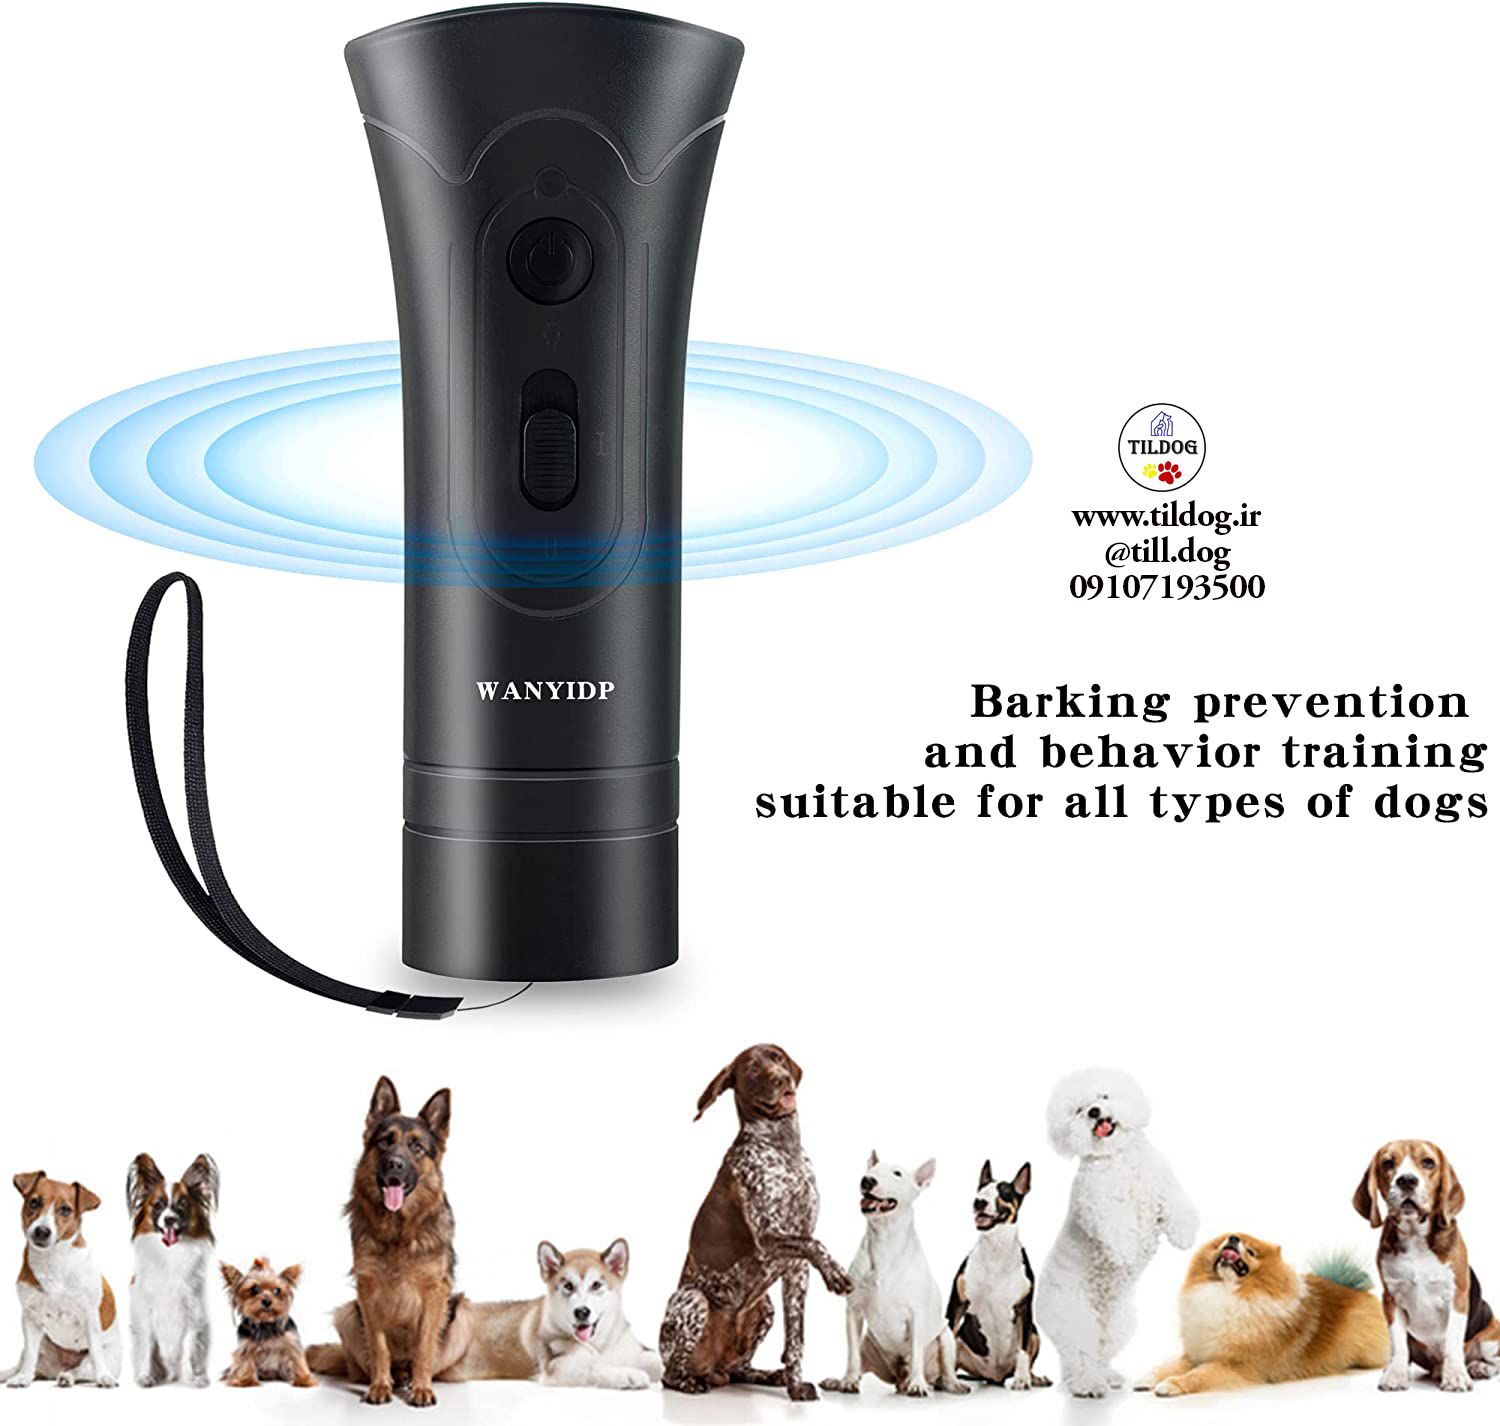 دستگاه بازدارنده ضد پارس Wanyi راه حلی ایمن و موثر برای آموزش سگ و دستگاه های کنترل پارس سگ ارائه می دهد.